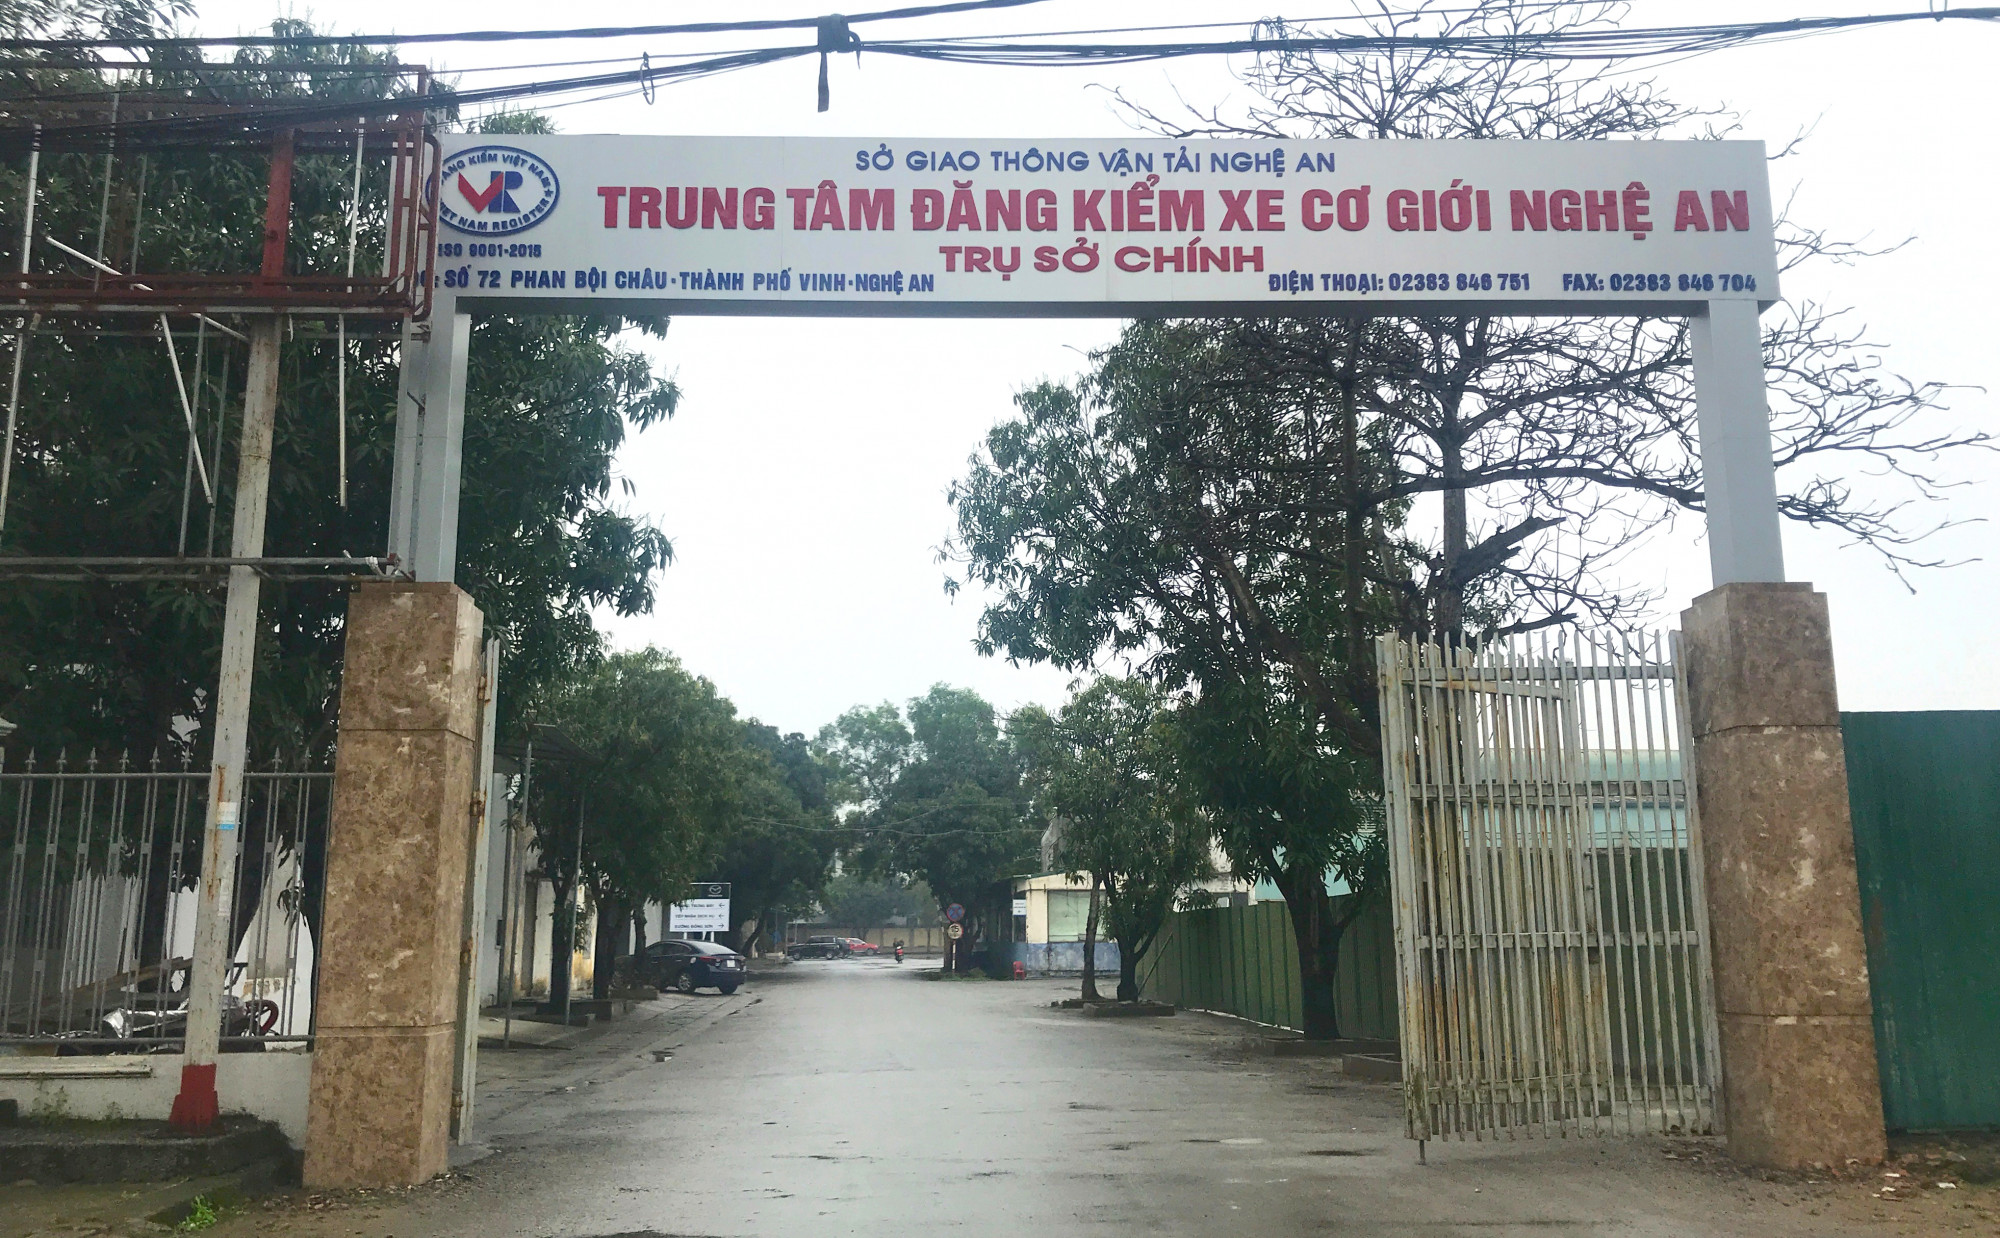 Trung tâm Đăng kiểm xe cơ giới tỉnh Nghệ An - Ảnh: Phan Ngọc